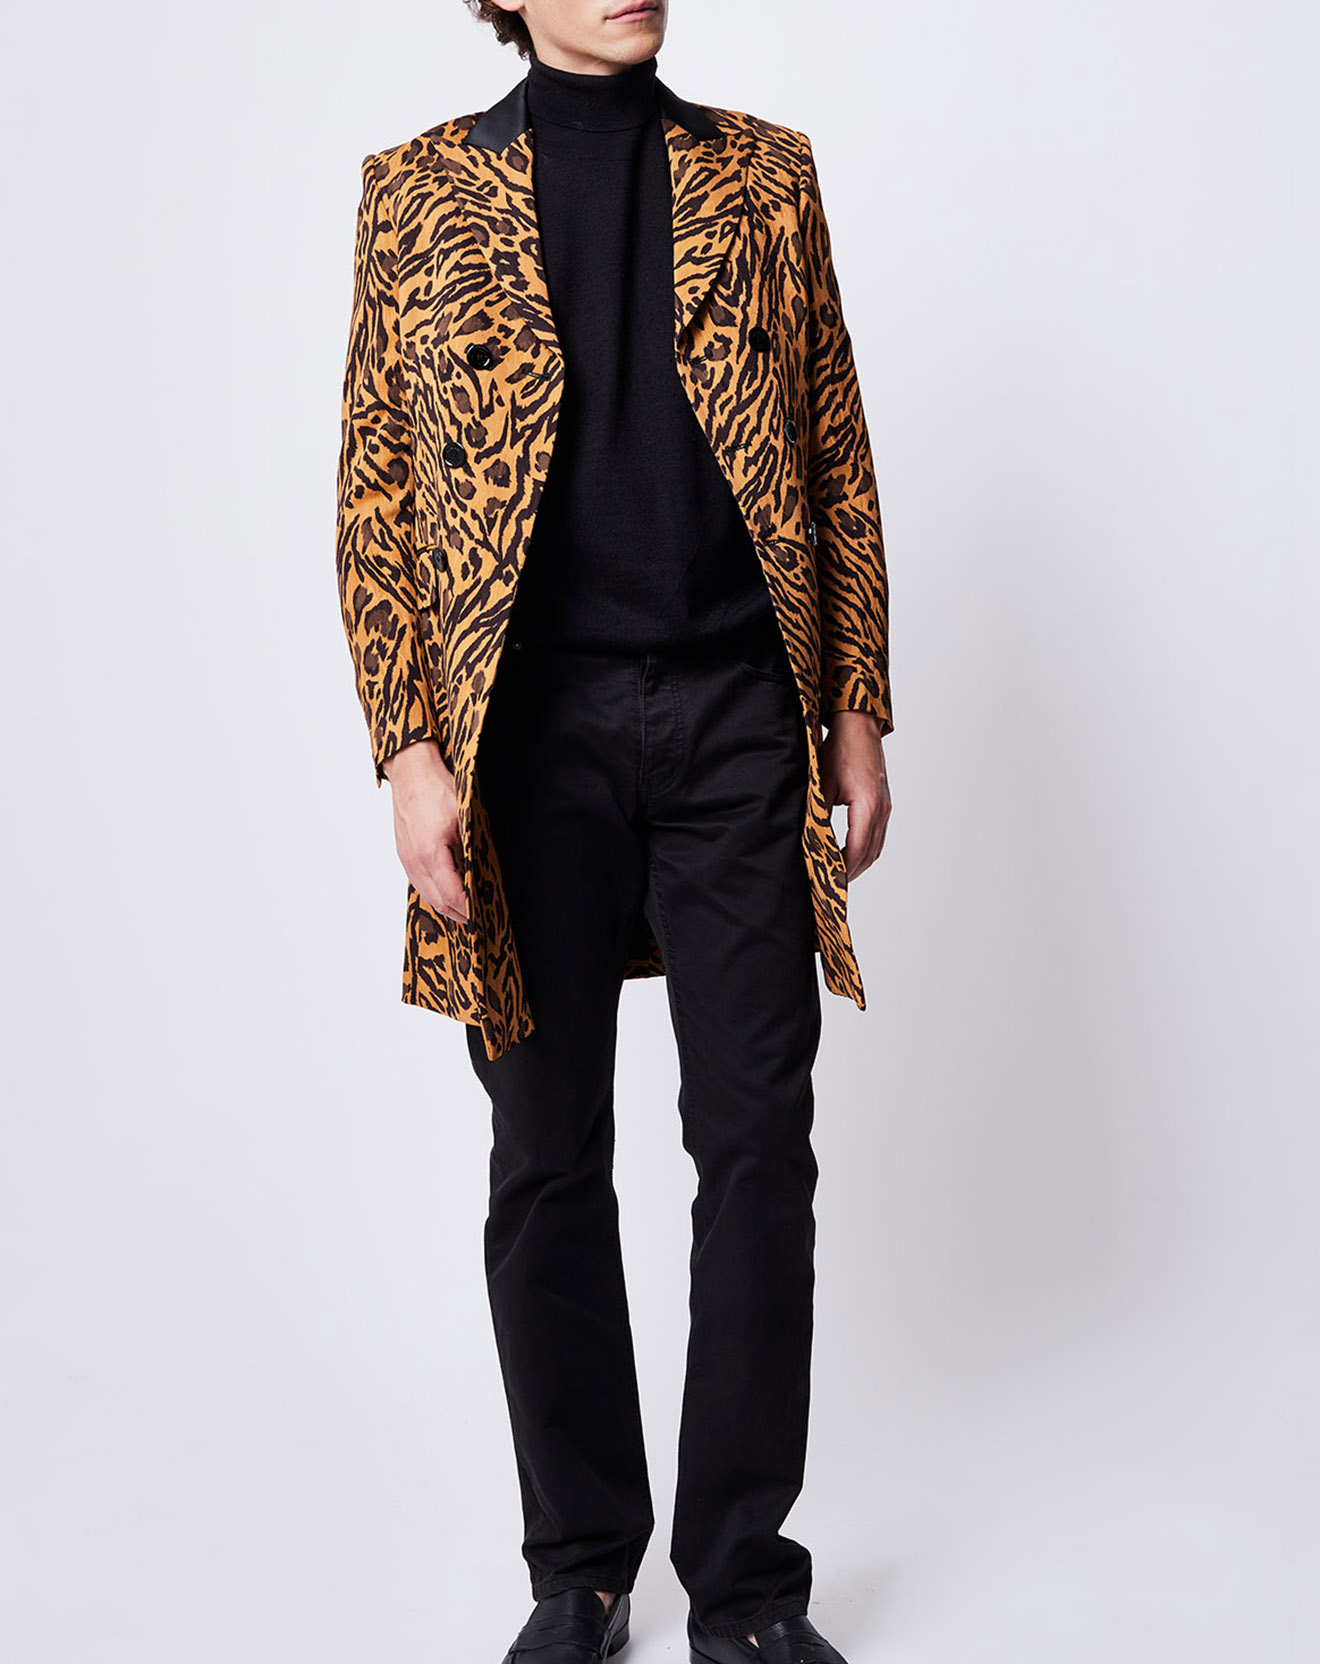 Manteau croisé imprimé léopard marron